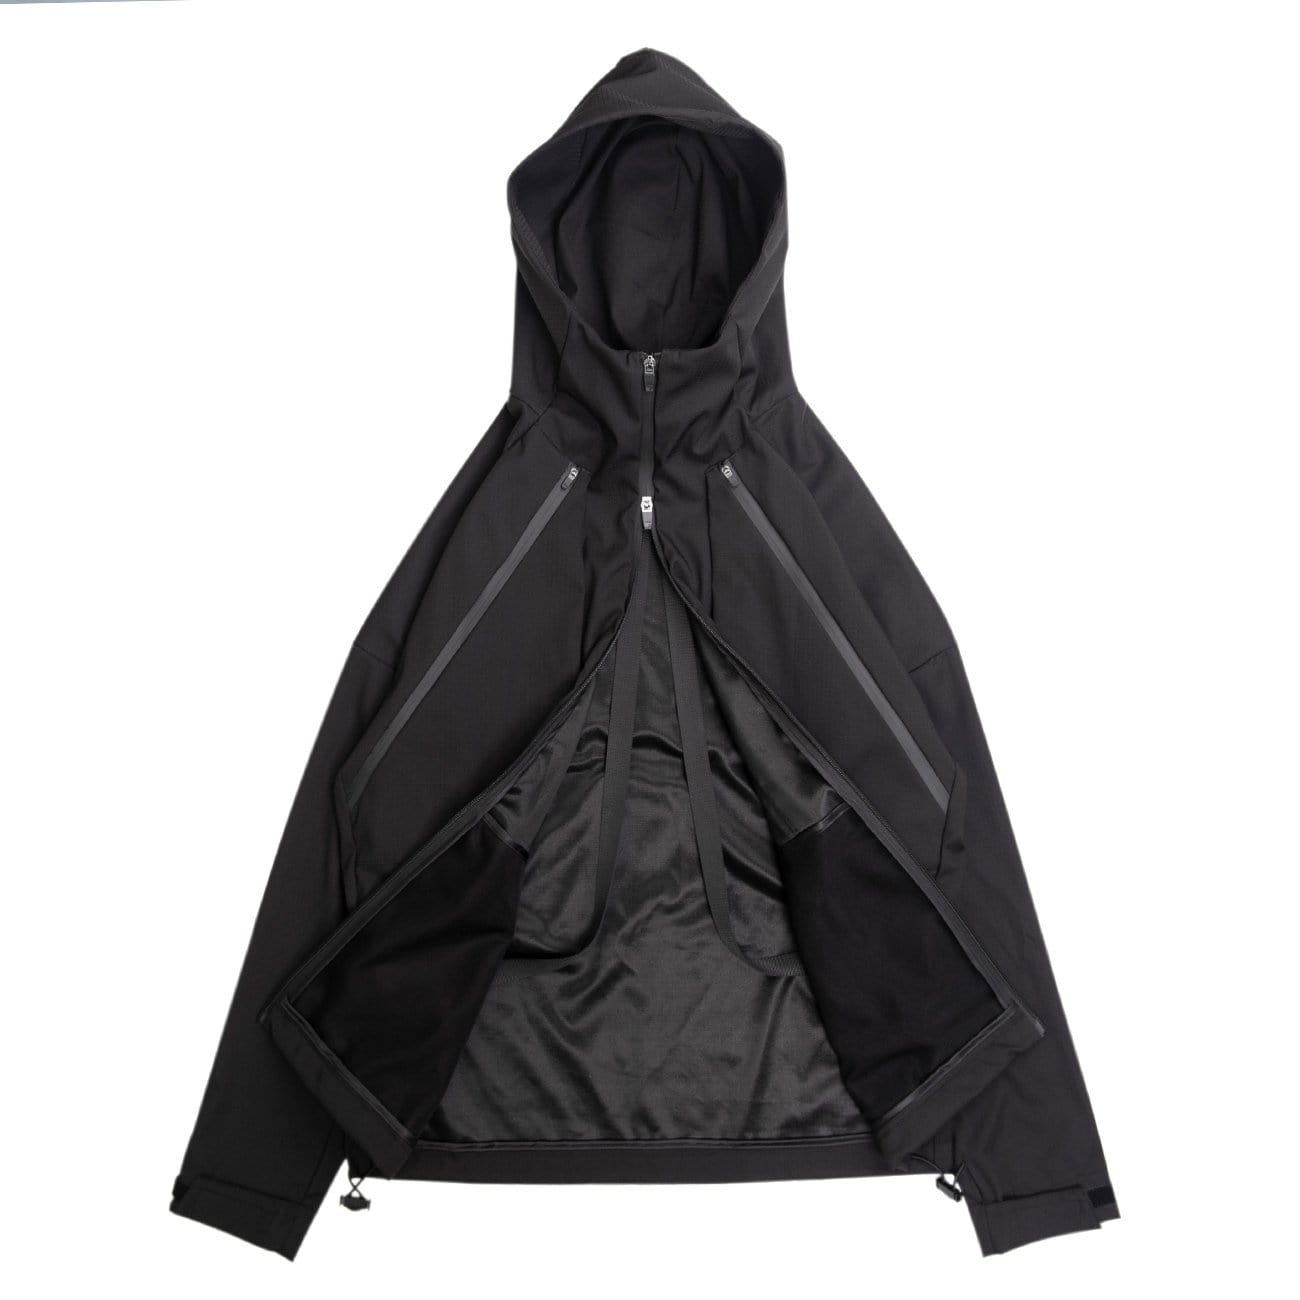 WLS Cyberpunk Waterproof Hooded Jacket